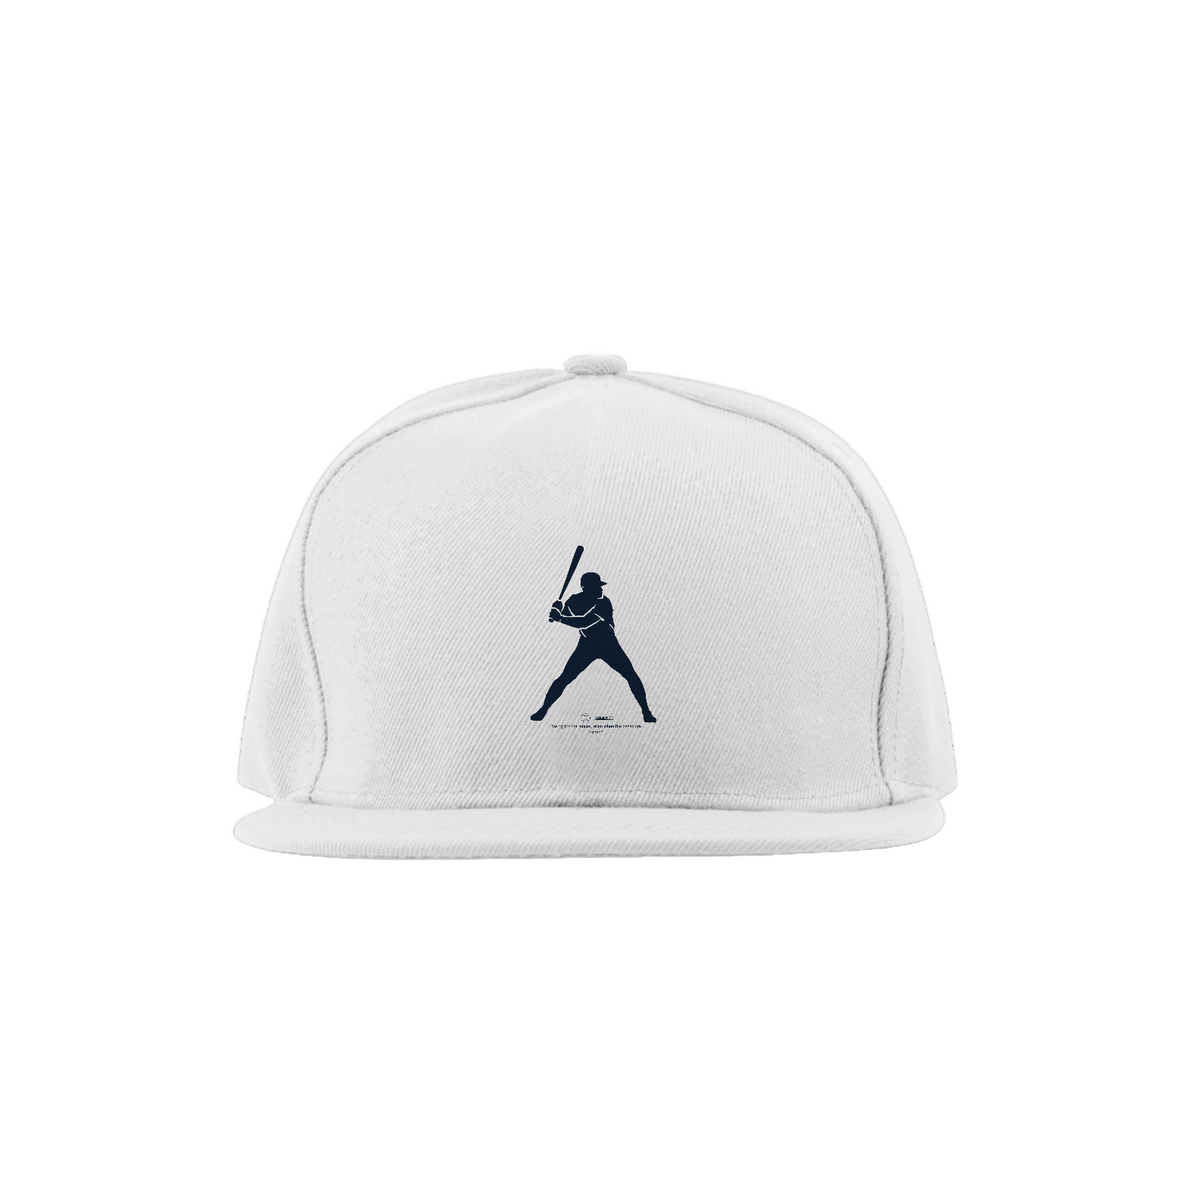 Nome do produto: Boné Baseball Collection.